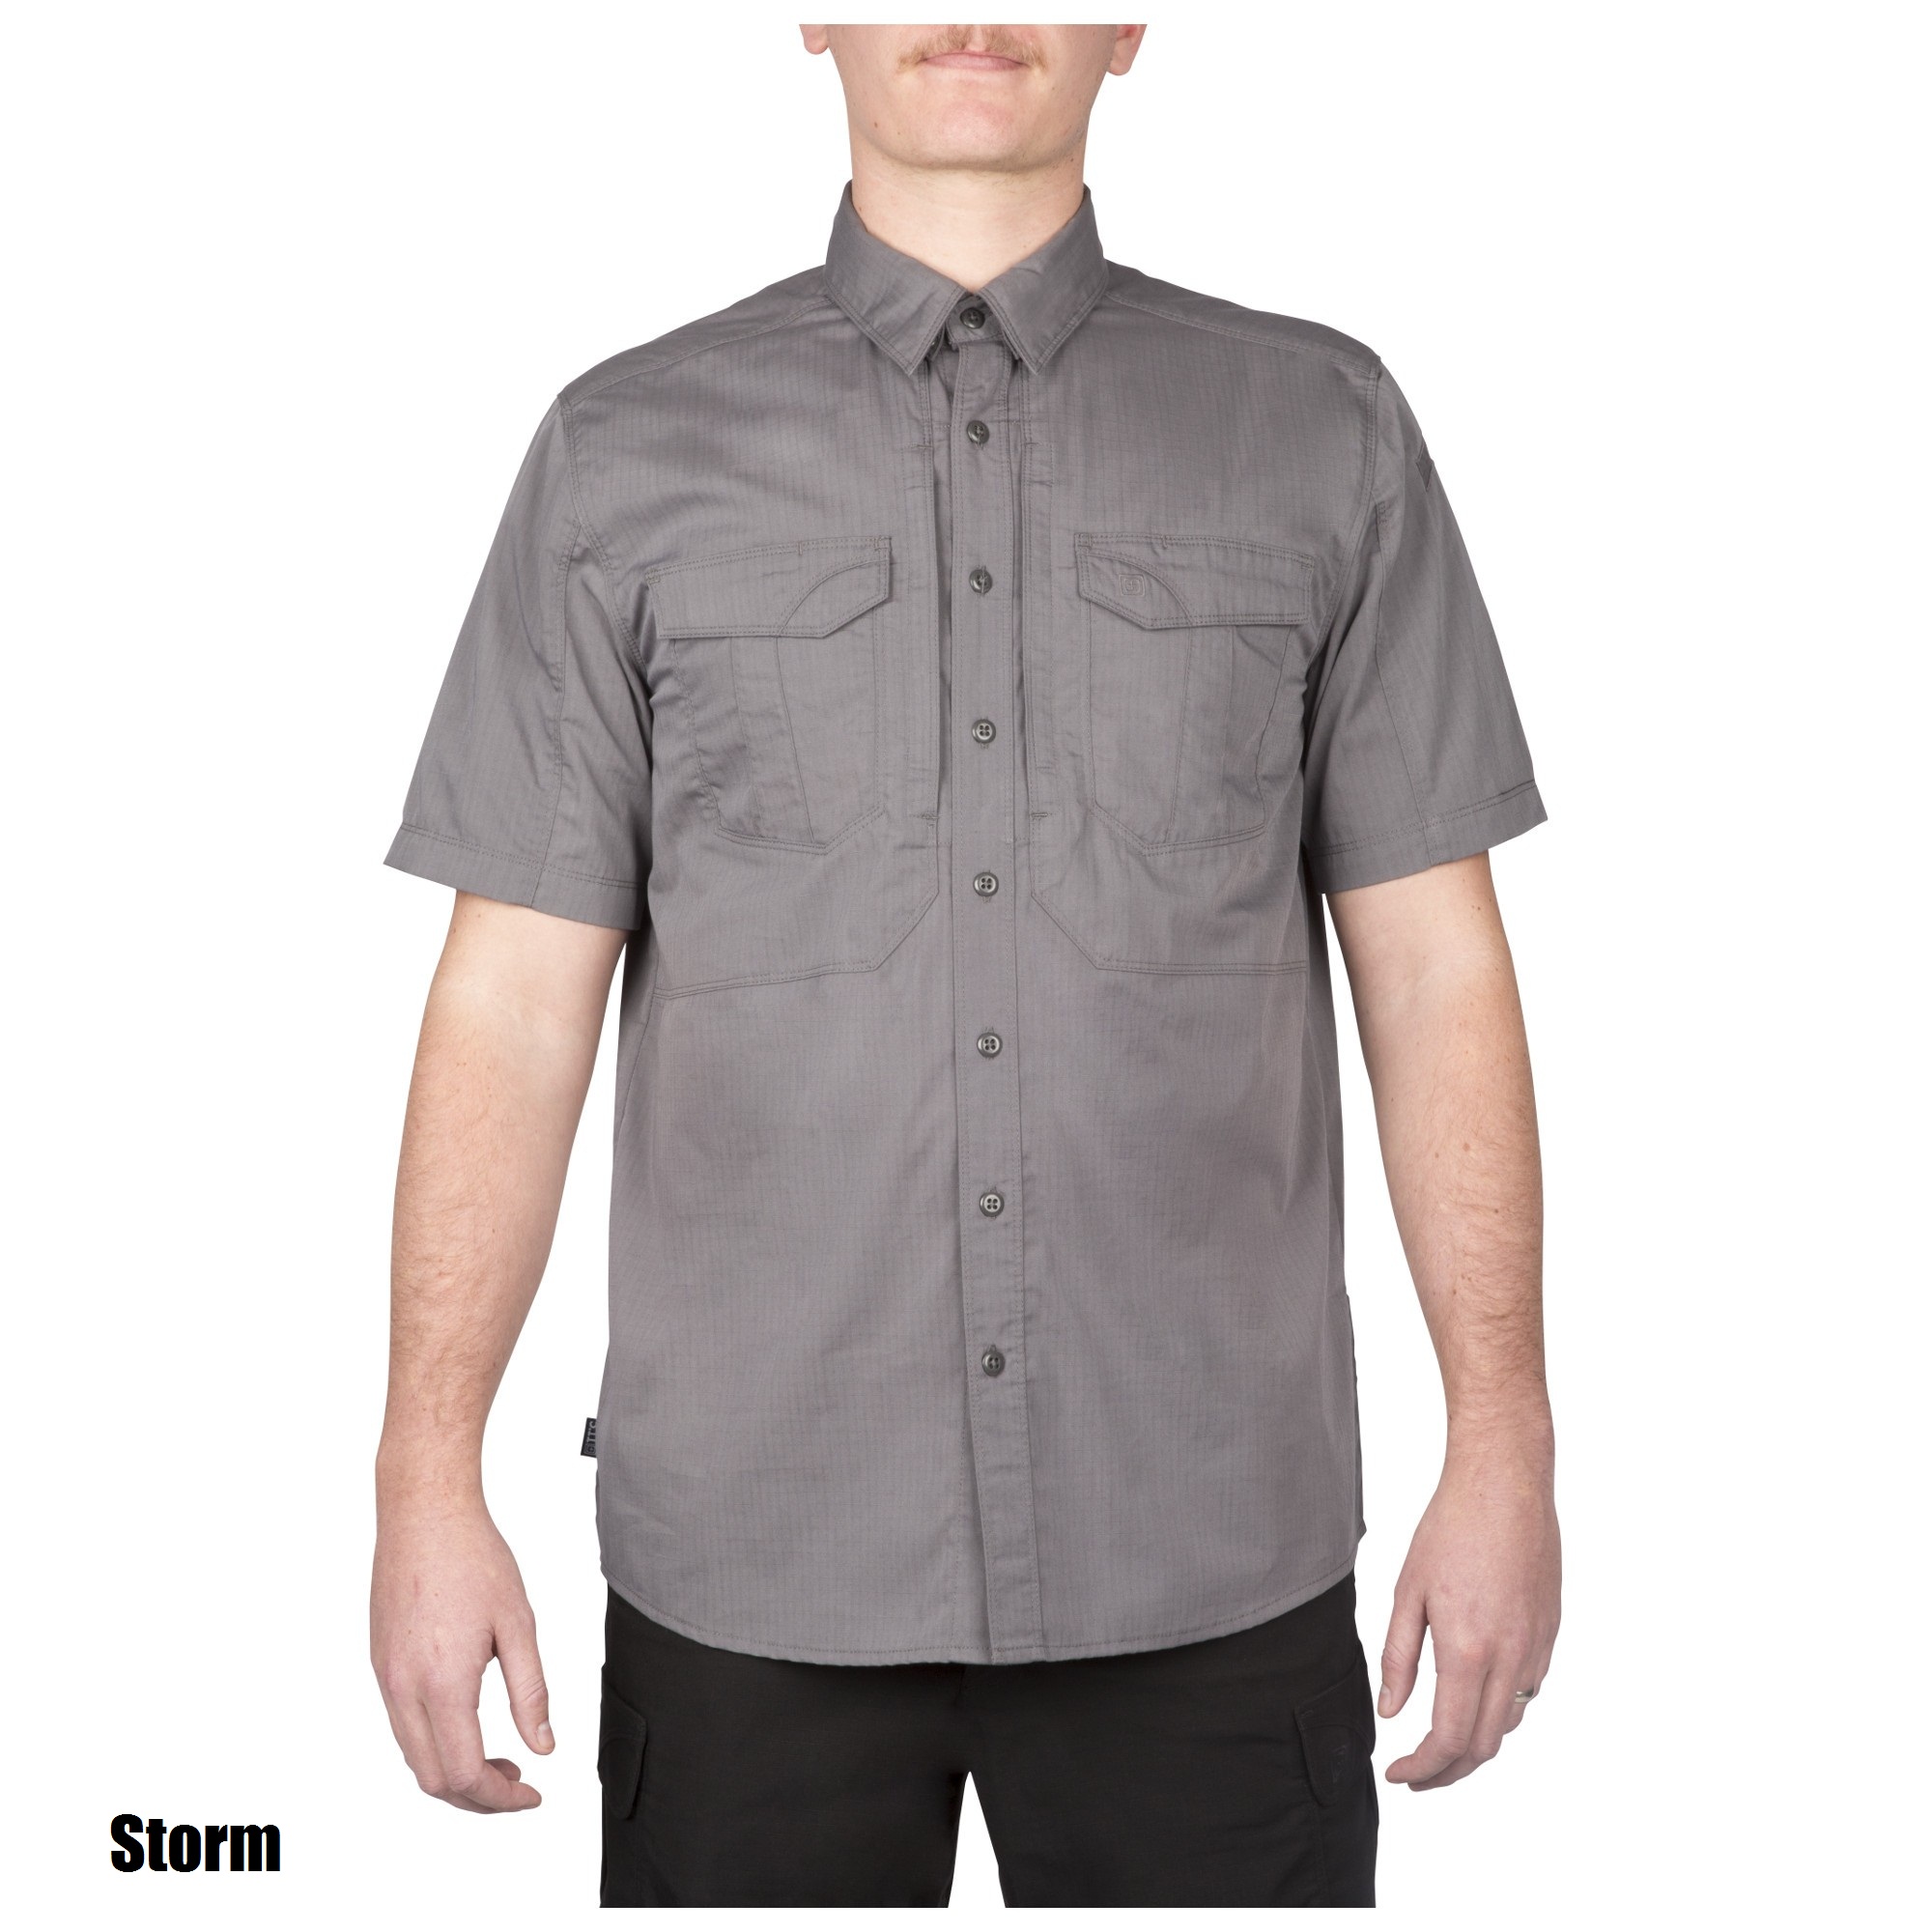 5.11 Stryke™ Short Sleeve Shirt